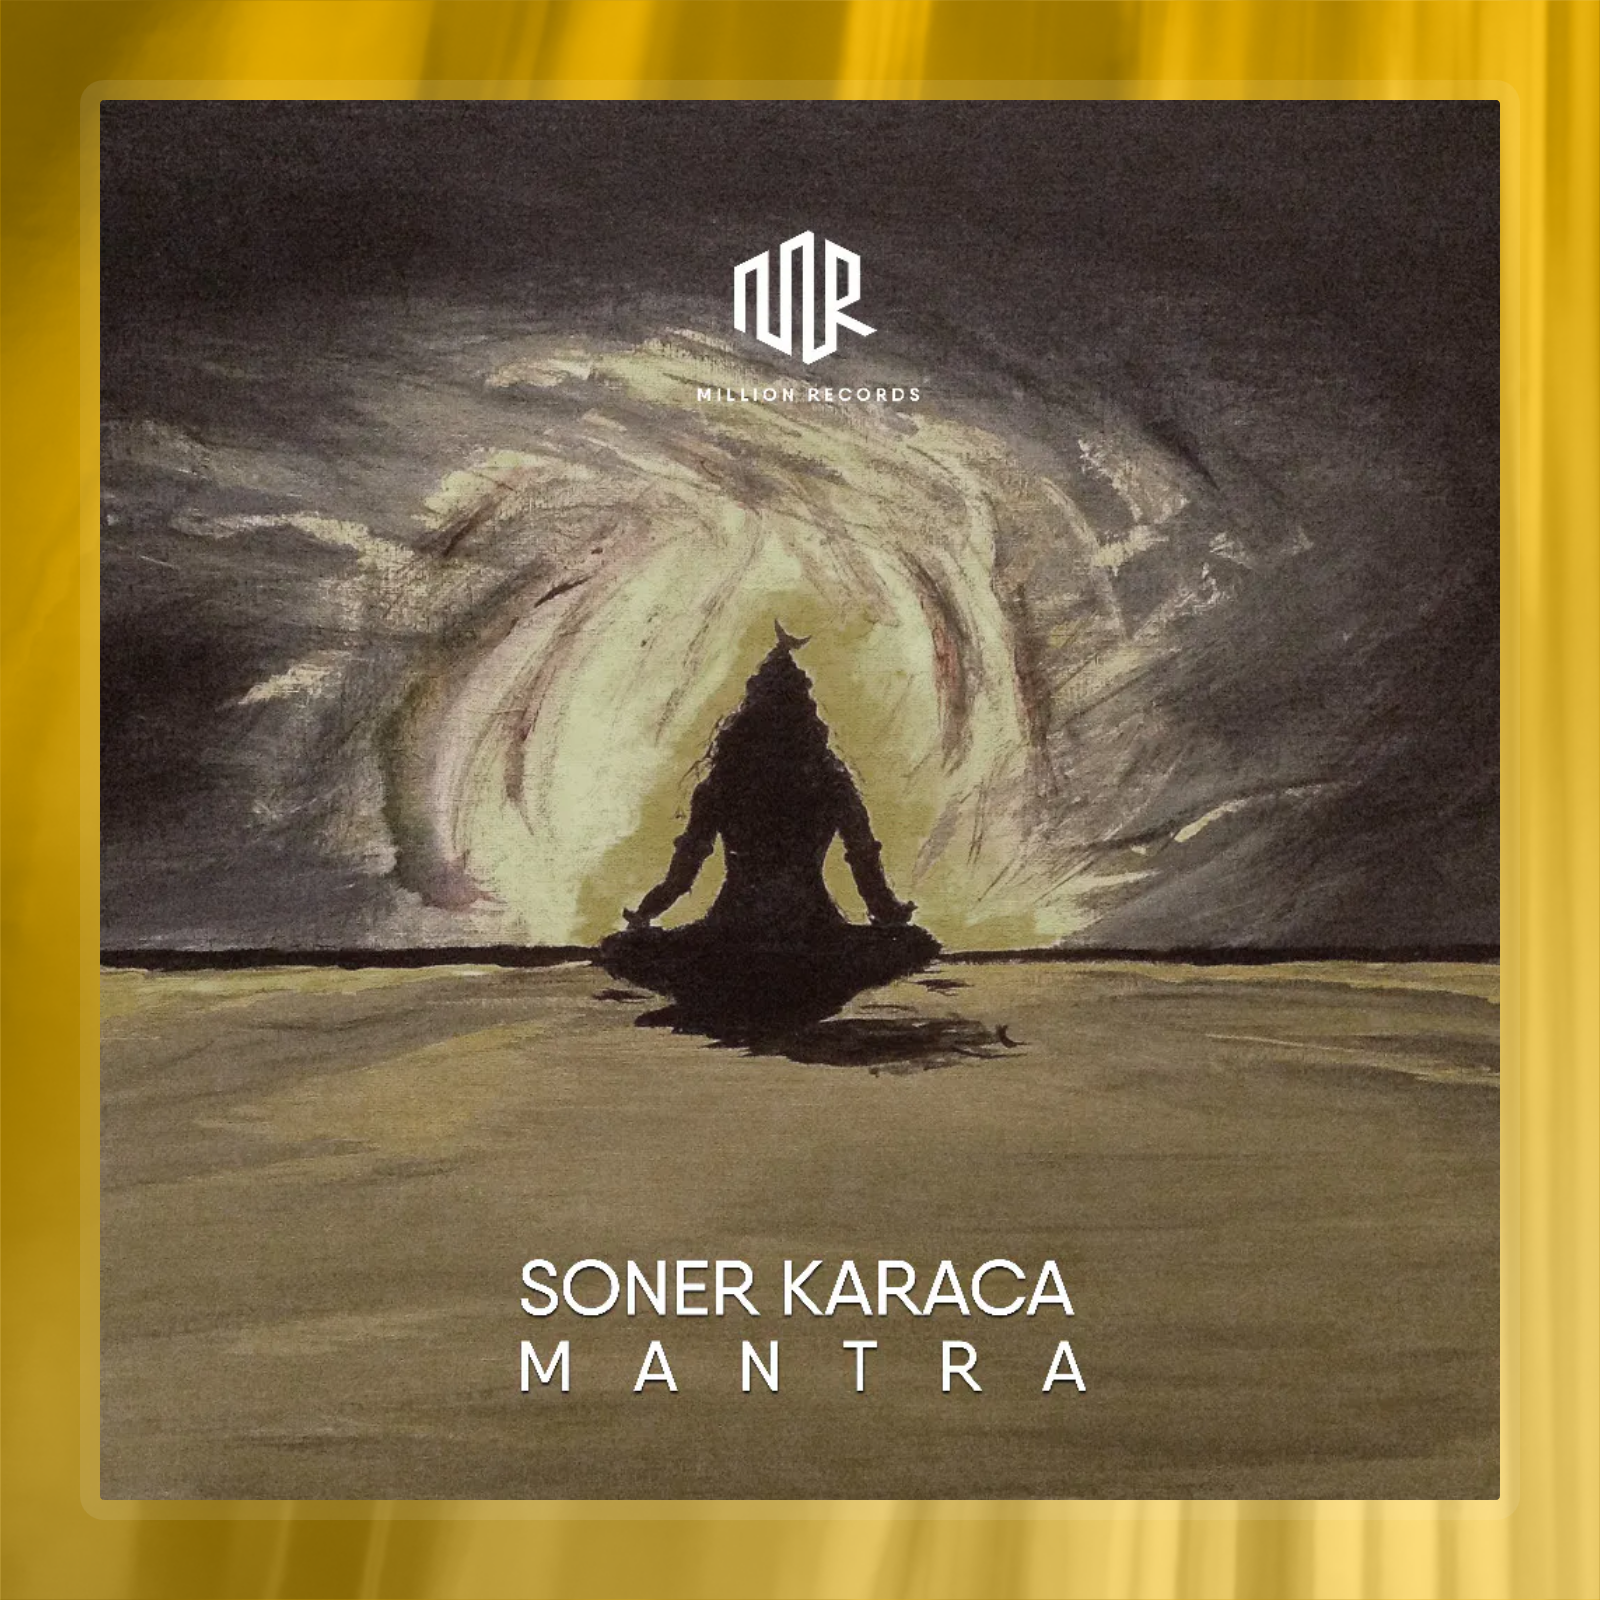 Soner Karaca - Mantra